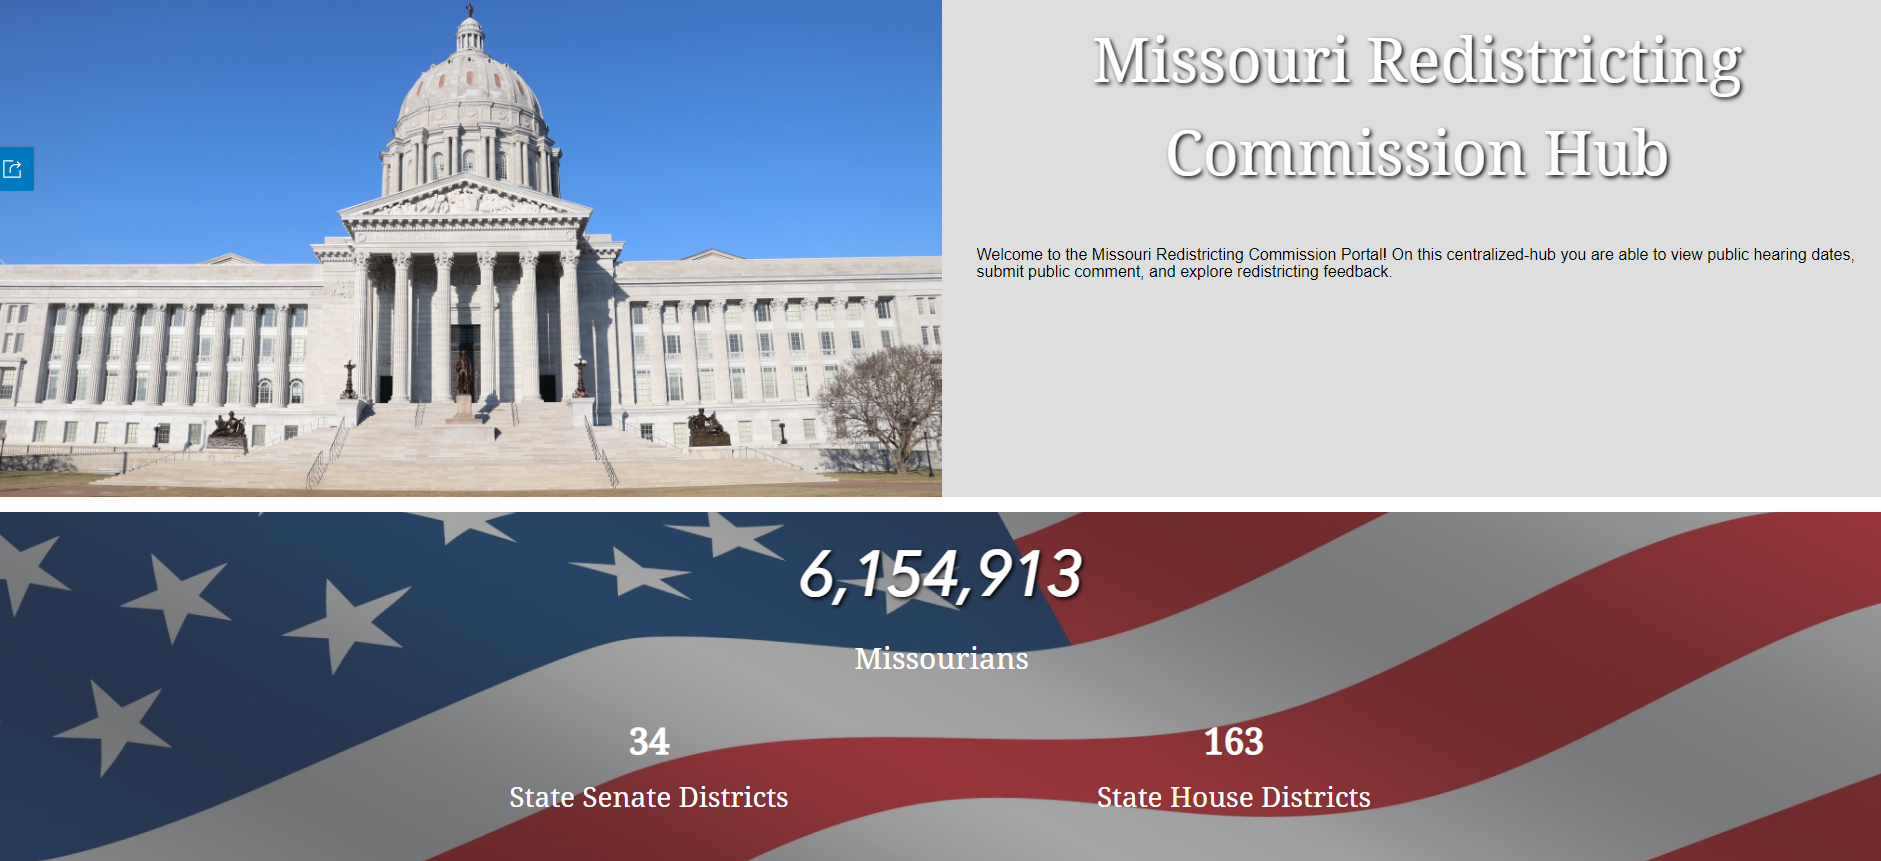 Missouri Redistricting Commission Hub.